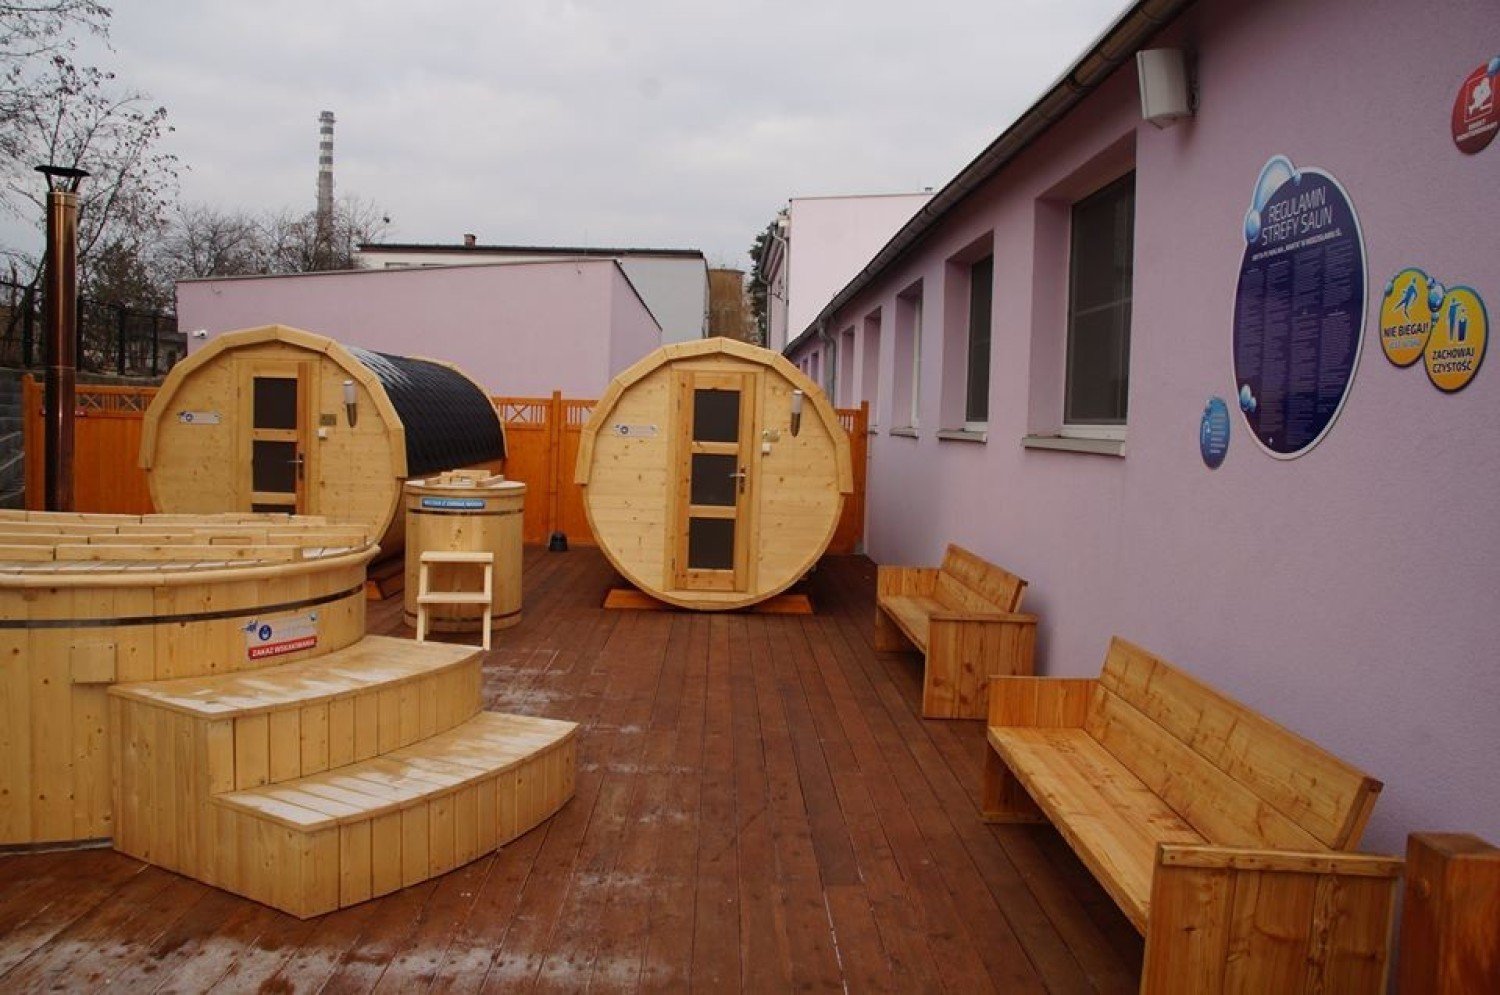 Strefa saun na basenie Manta w Wodzisławiu Śl. otwarta | Wodzisław Śląski  Nasze Miasto